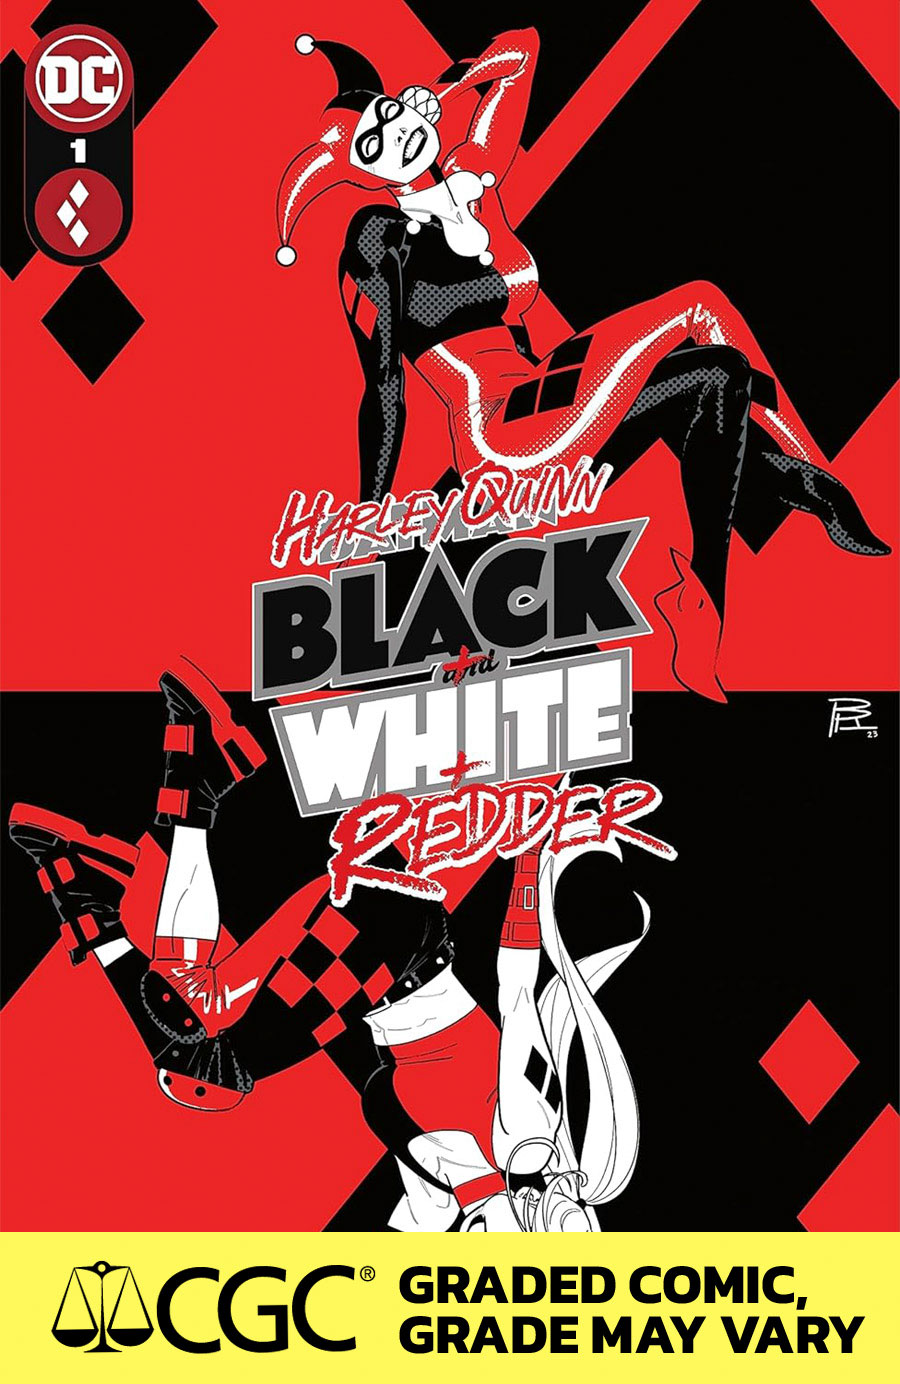 Harley Quinn Black White Redder #1 Cover F DF CGC Graded 9.6 Or Higher